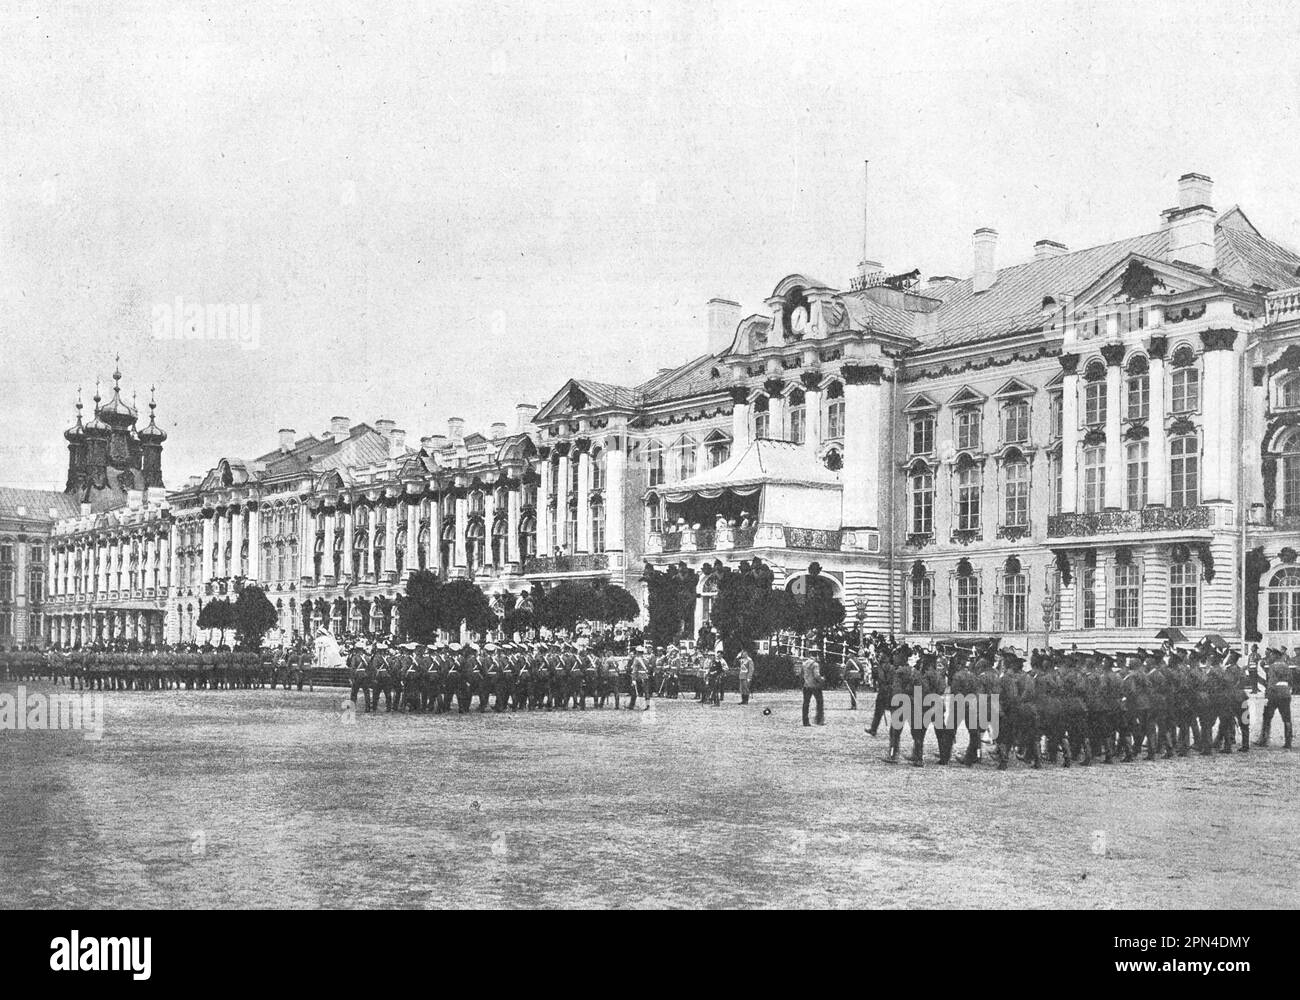 Il passaggio delle truppe in una marcia cerimoniale durante la celebrazione del 200th° anniversario della fondazione di Tsarskoye Selo il 24 giugno 1910. Foto dal 1910. Foto Stock